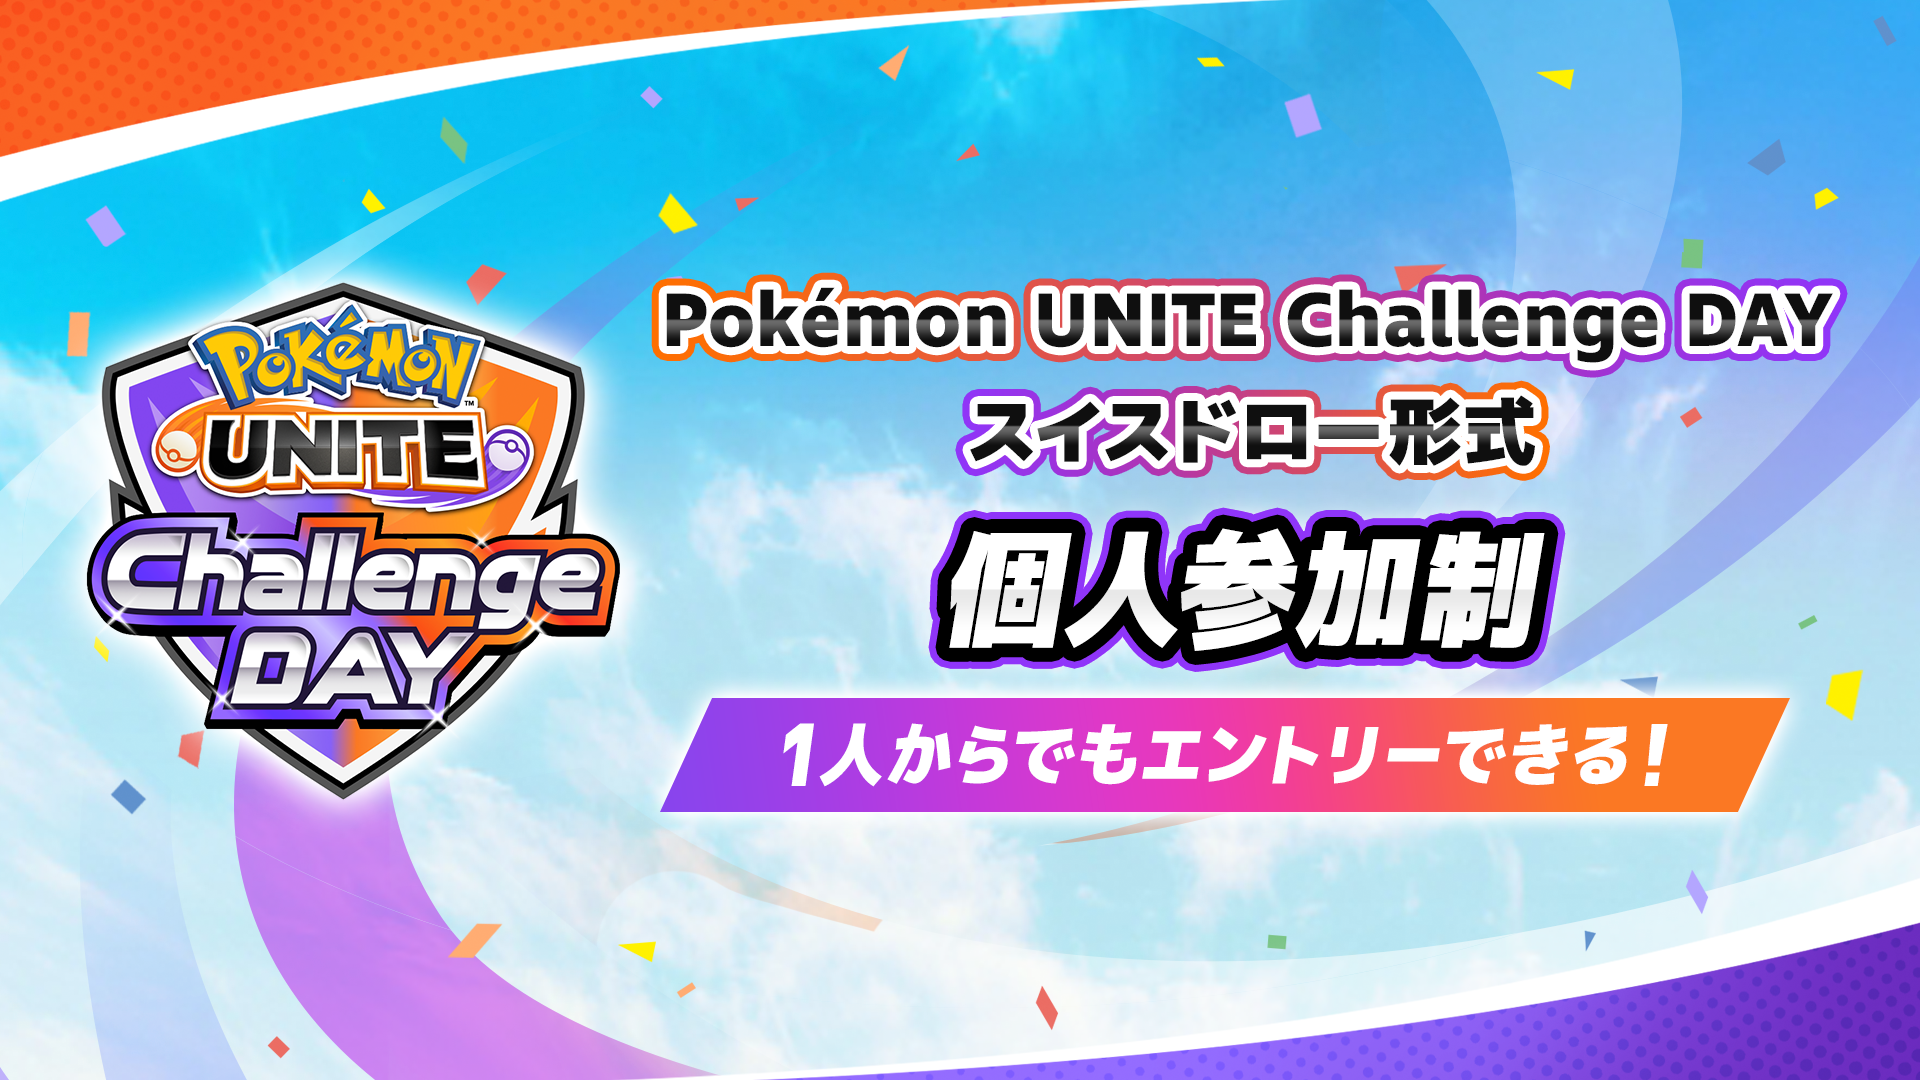 Pokemon UNITE Challenge DAY 12.10 個人参加制 スイスドロー形式 午前の部・午後の部 計3イベント開催！